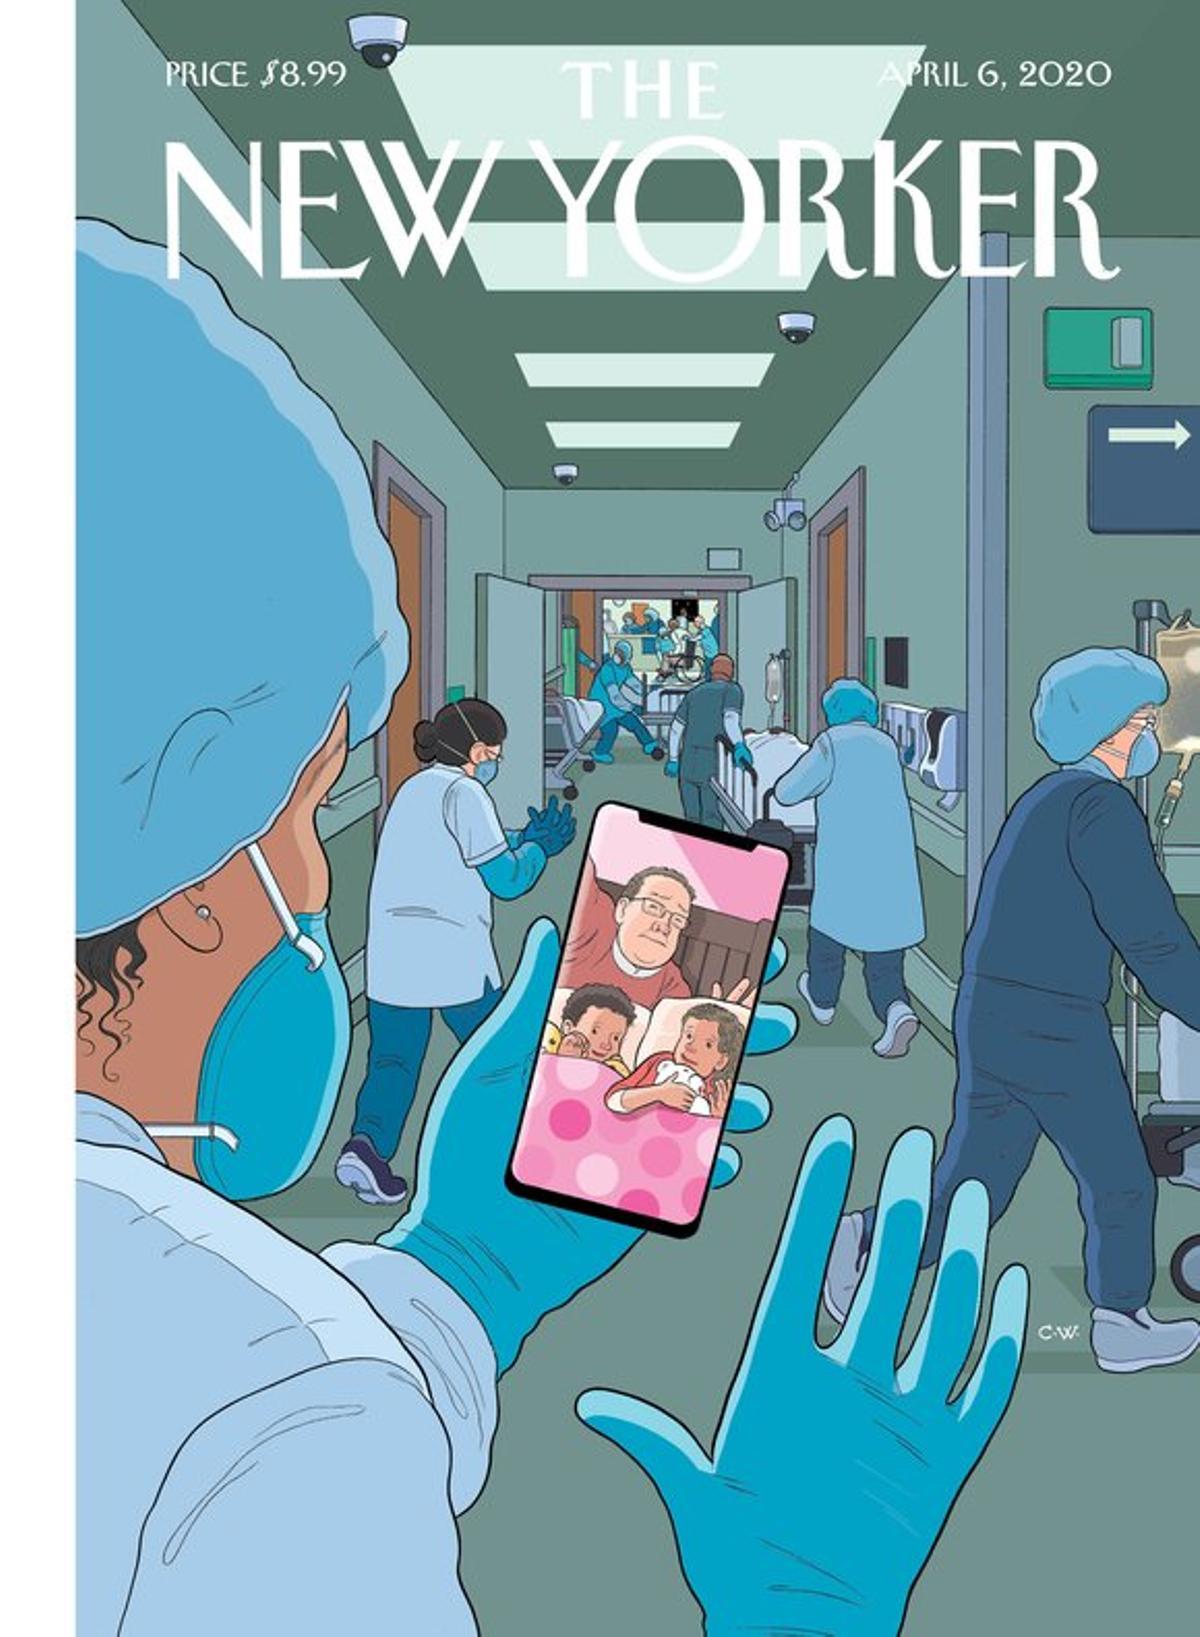 New Yorker dedica su portada a los héroes de la pandemia, los médicos